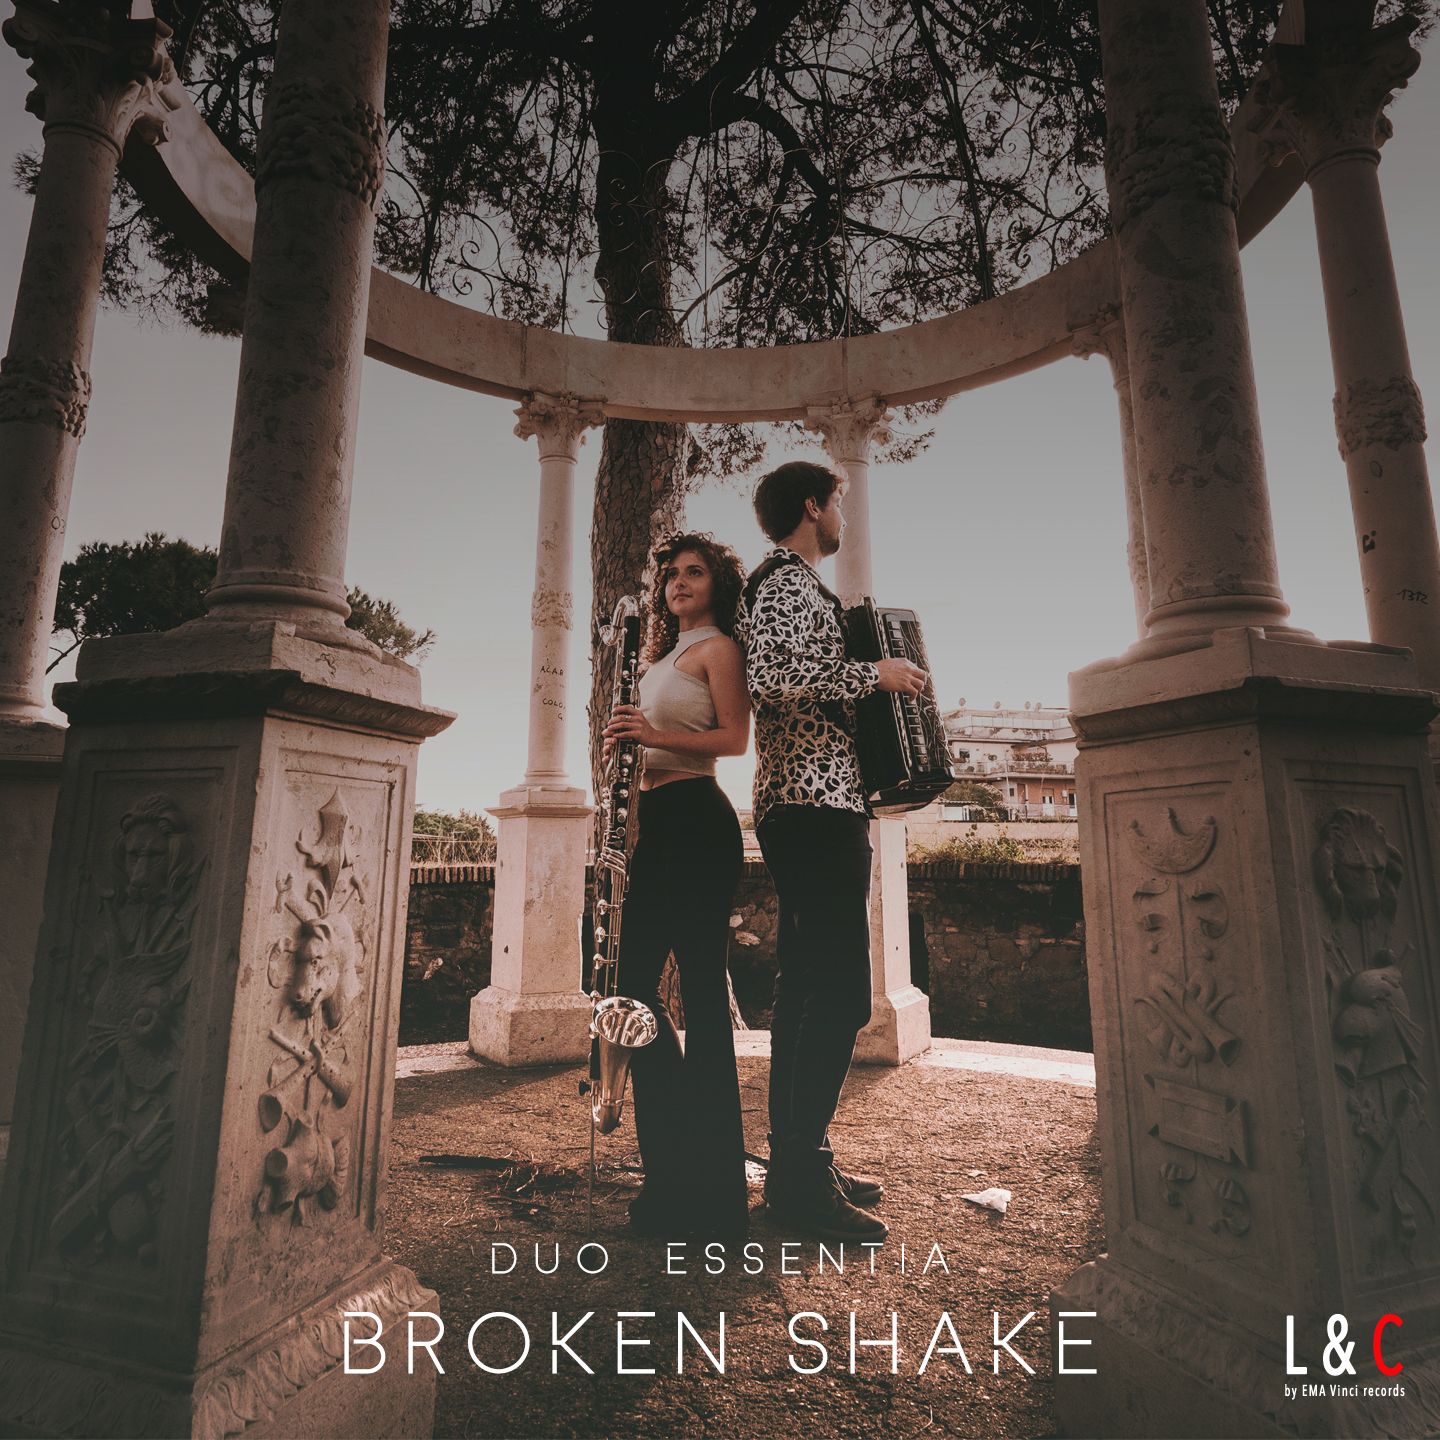 Copertina del CD Broken Shake del duo essentia, con samuele telari e alice cortegiani